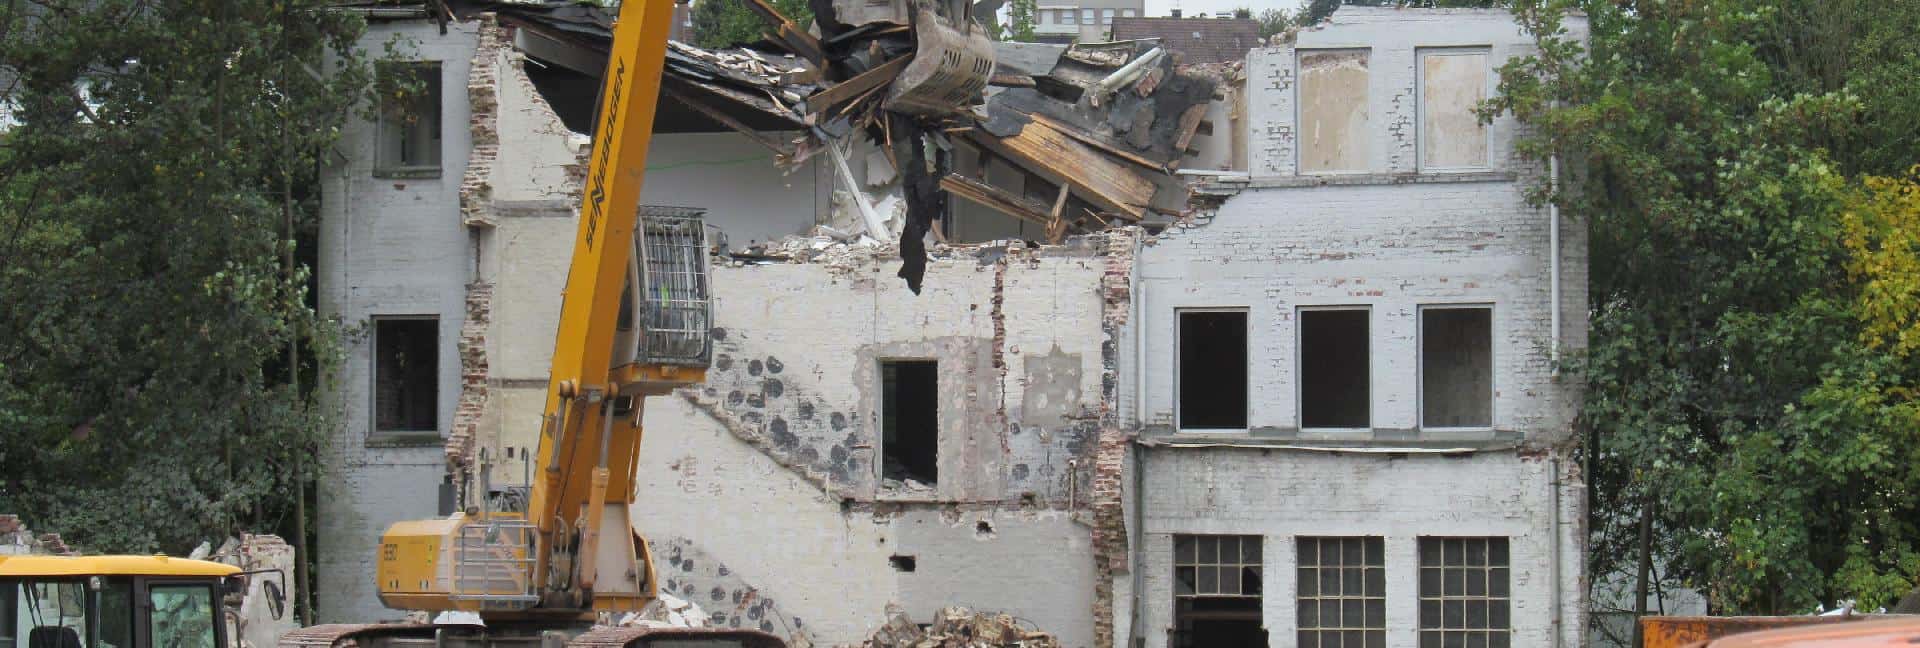 BAUER Resources GmbH - Building demolition 